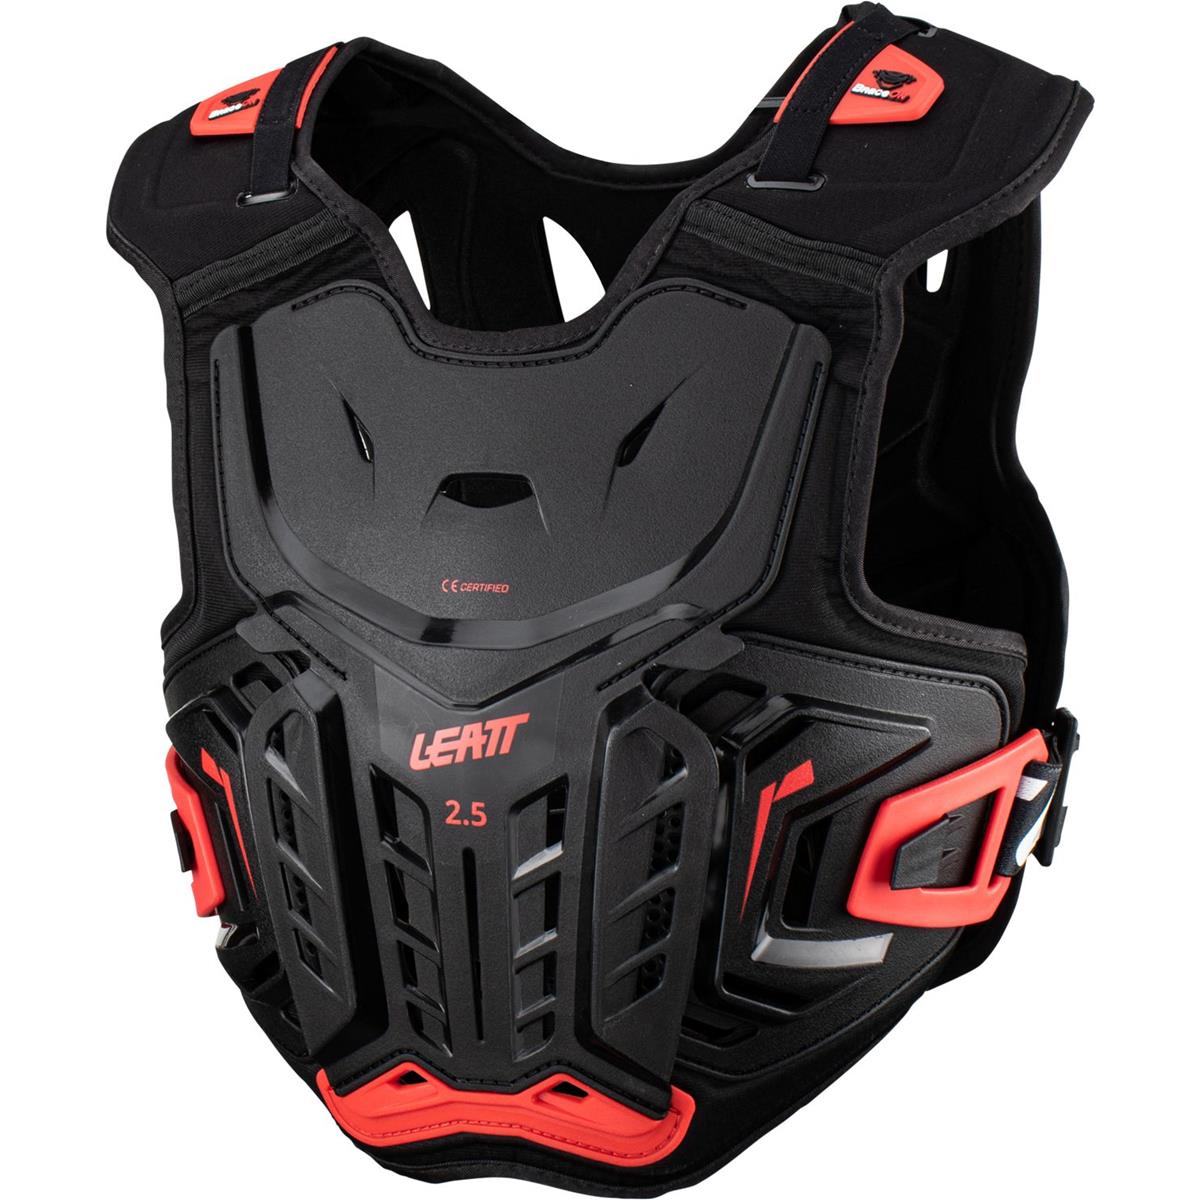 Leatt Kids Chest Protector 2.5 Black/Red